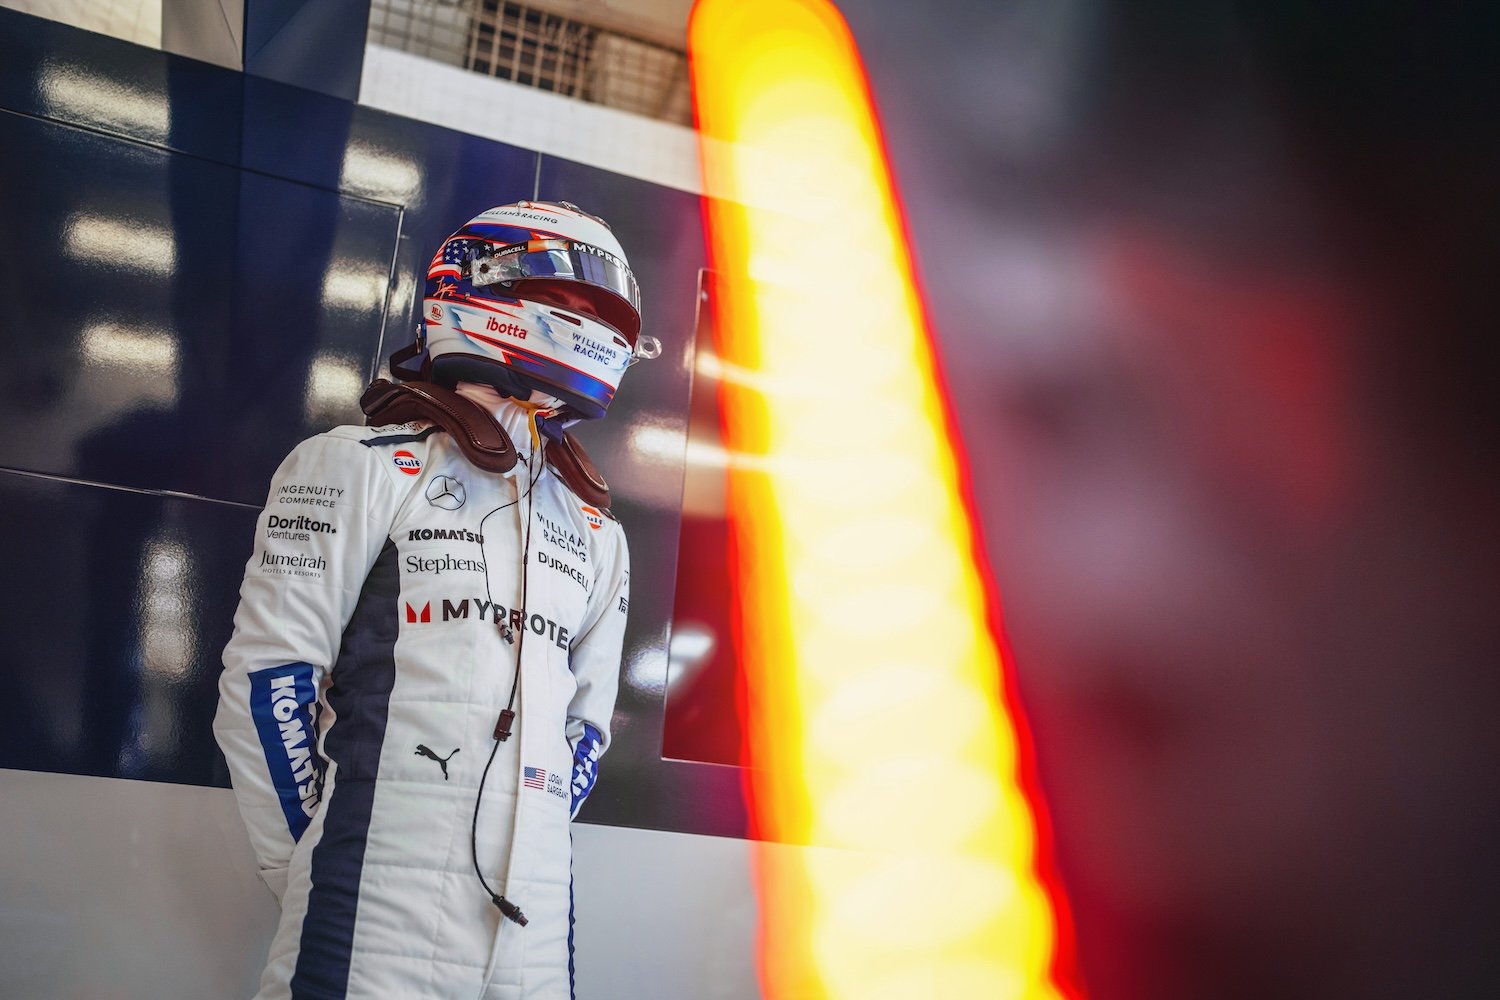 Jumeirah Group and Williams Racing extend their partnership